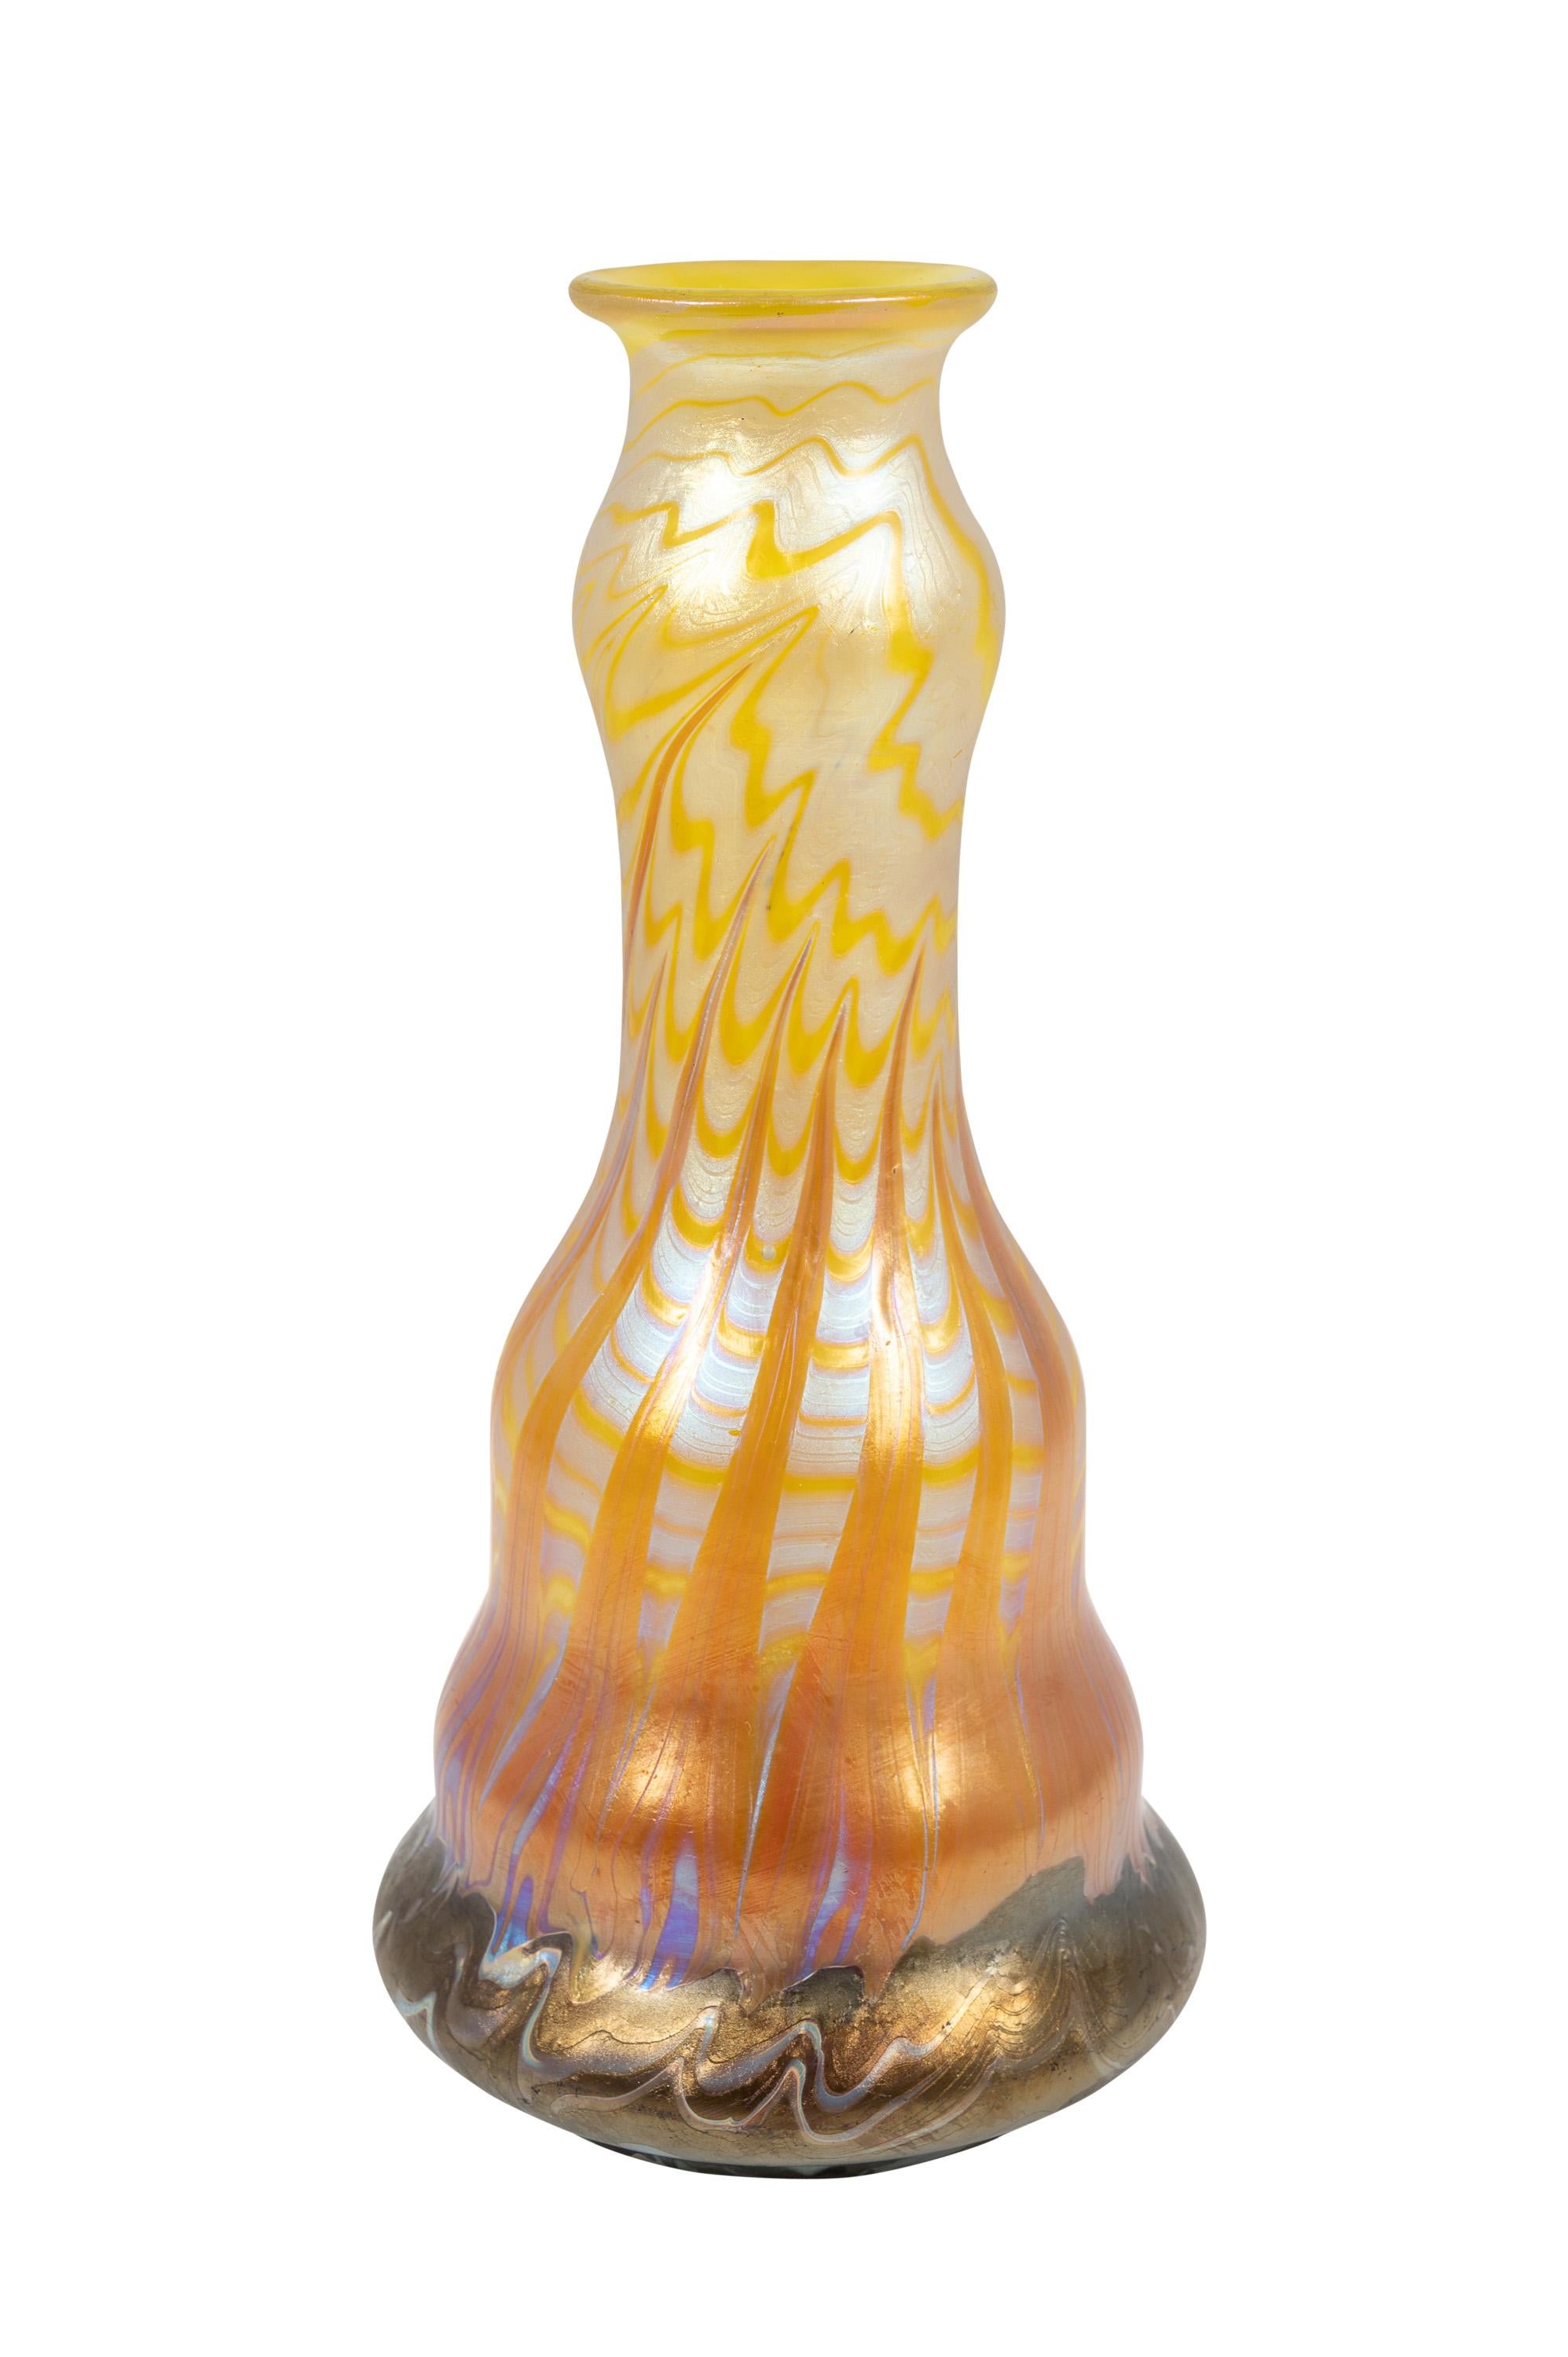 Vase aus böhmischem Glas, hergestellt von Johann Loetz Witwe, Dekor PG 356, um 1900, signiert, Pariser Weltausstellung, gelb, orange, braun, ocker, silber, weiß, Bohemia, Wiener Jugendstil, Art Deco, Kunstglas, irisierendes Glas.

Technik und